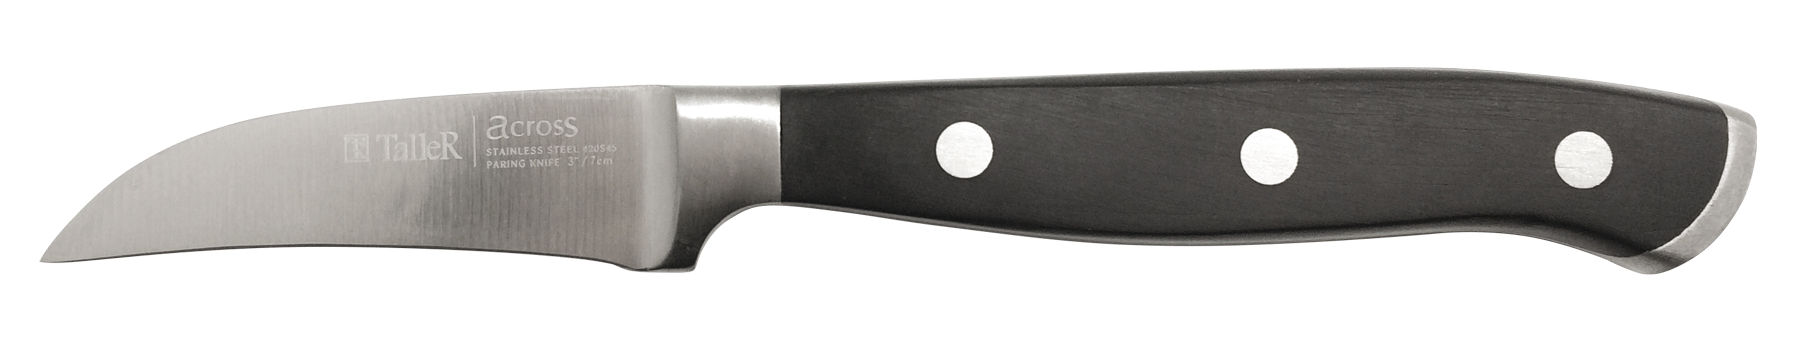 22026 TalleR Нож для чистки изогнутый, черный/серебристый